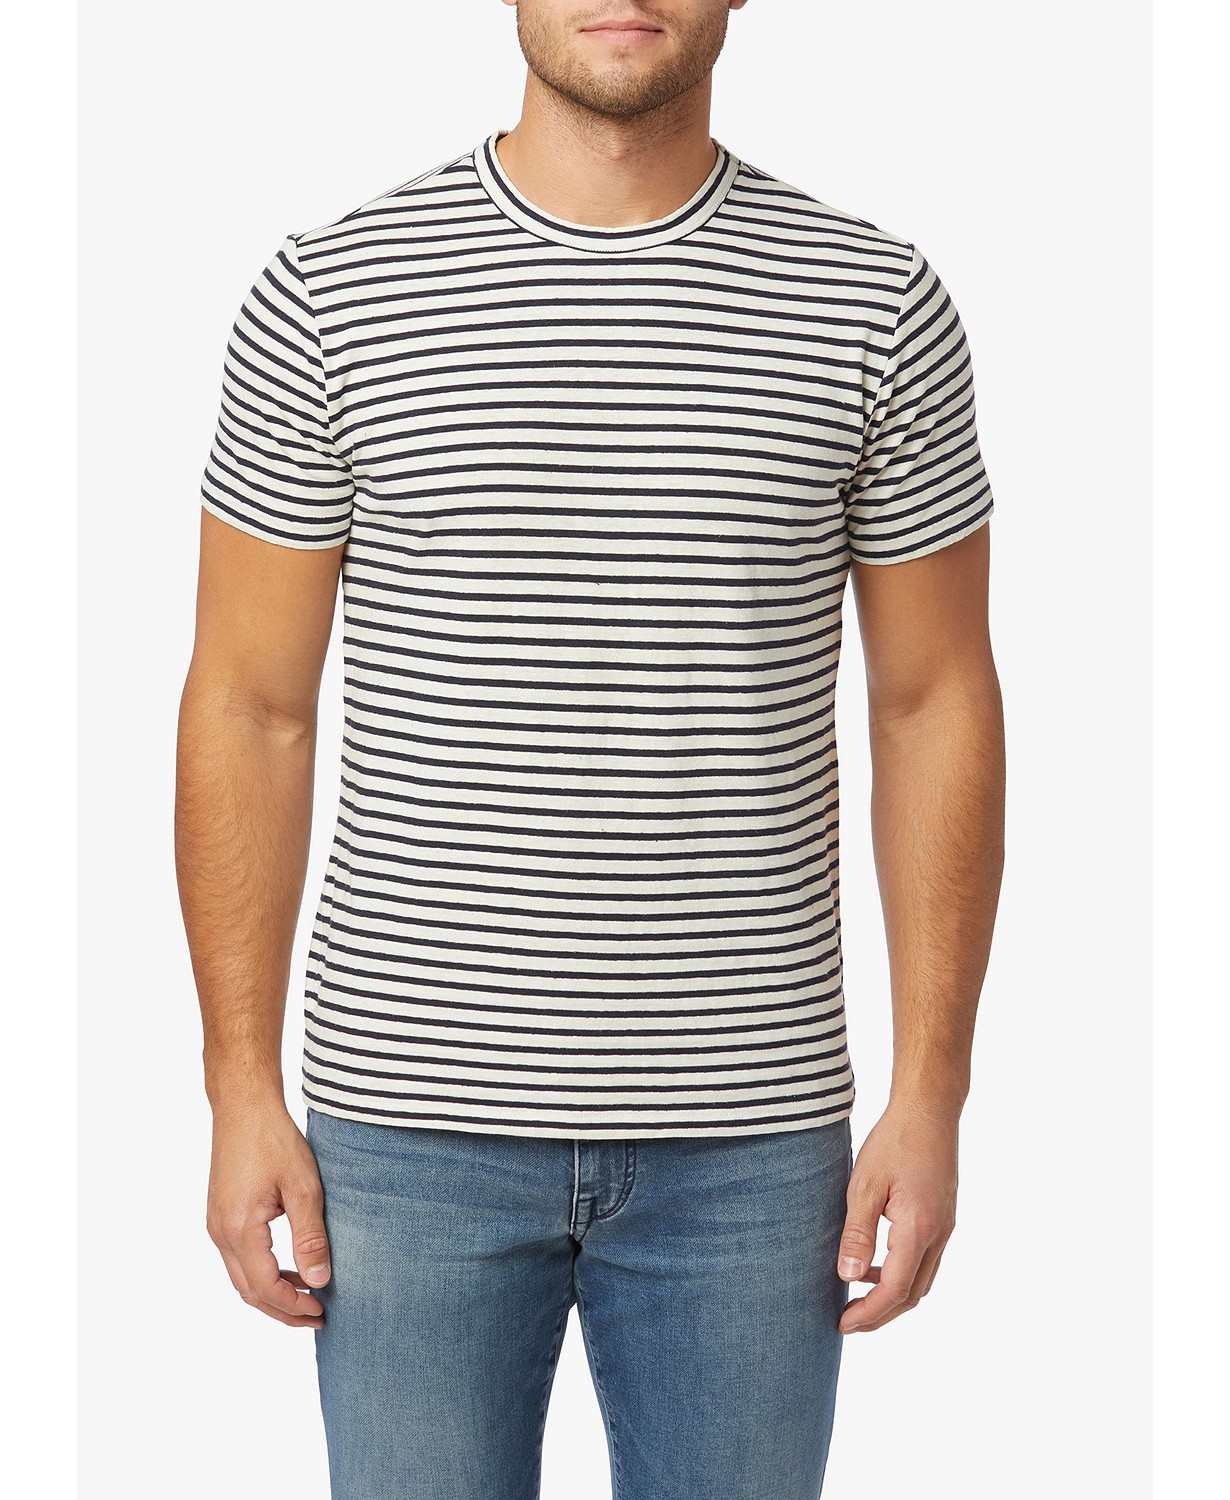 men spring essentials - Striped Shirts